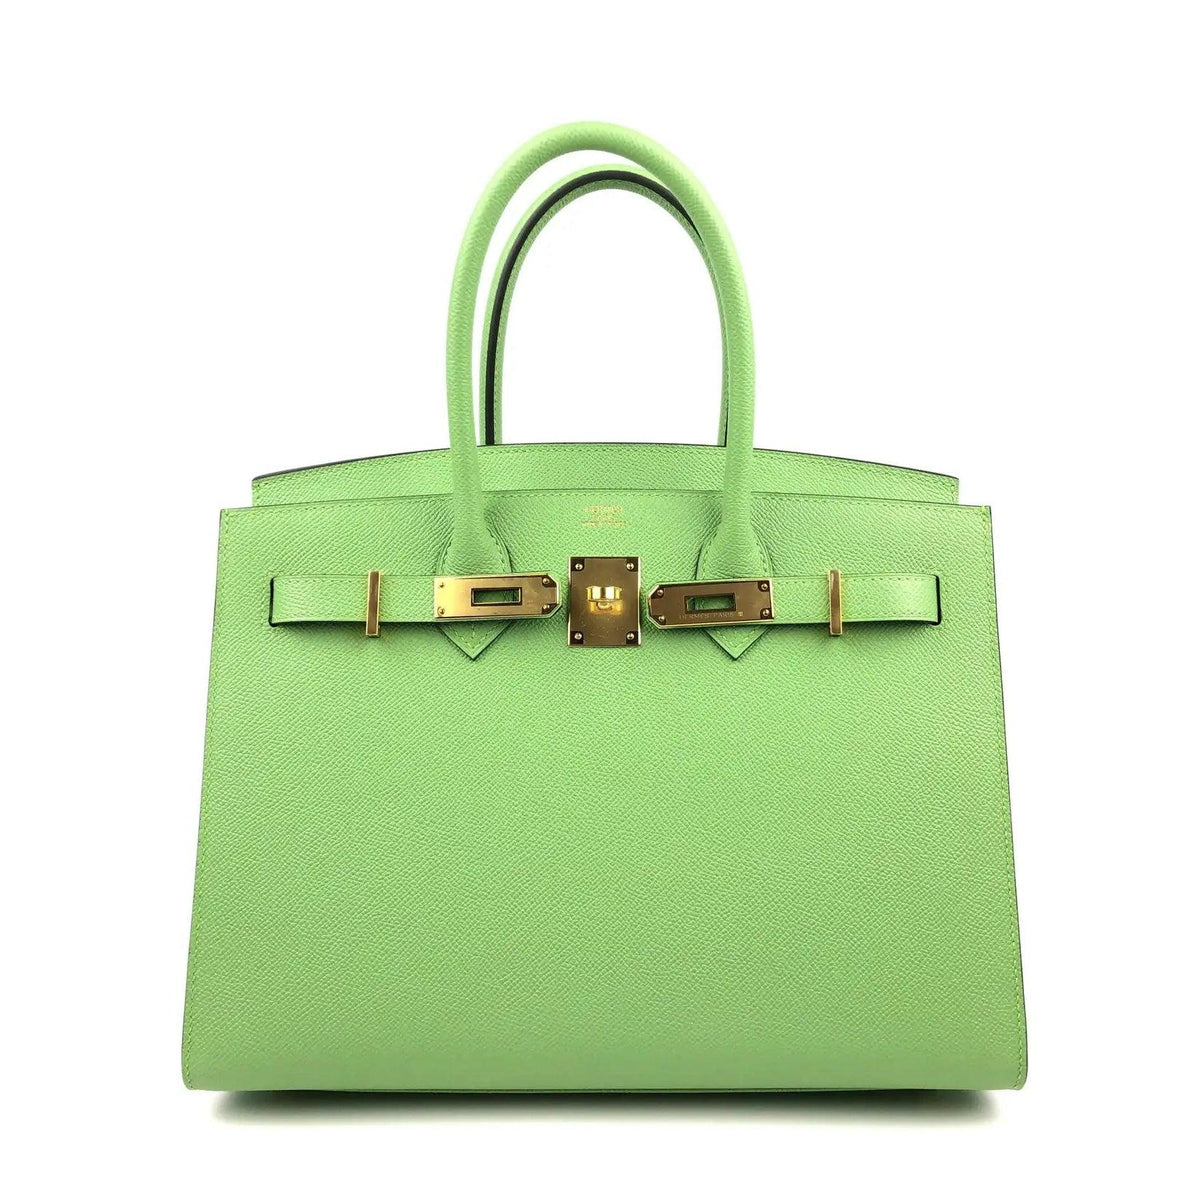 Rare HERMES Birkin 30 Vert Criquet Green Sellier Epsom Leather Bag